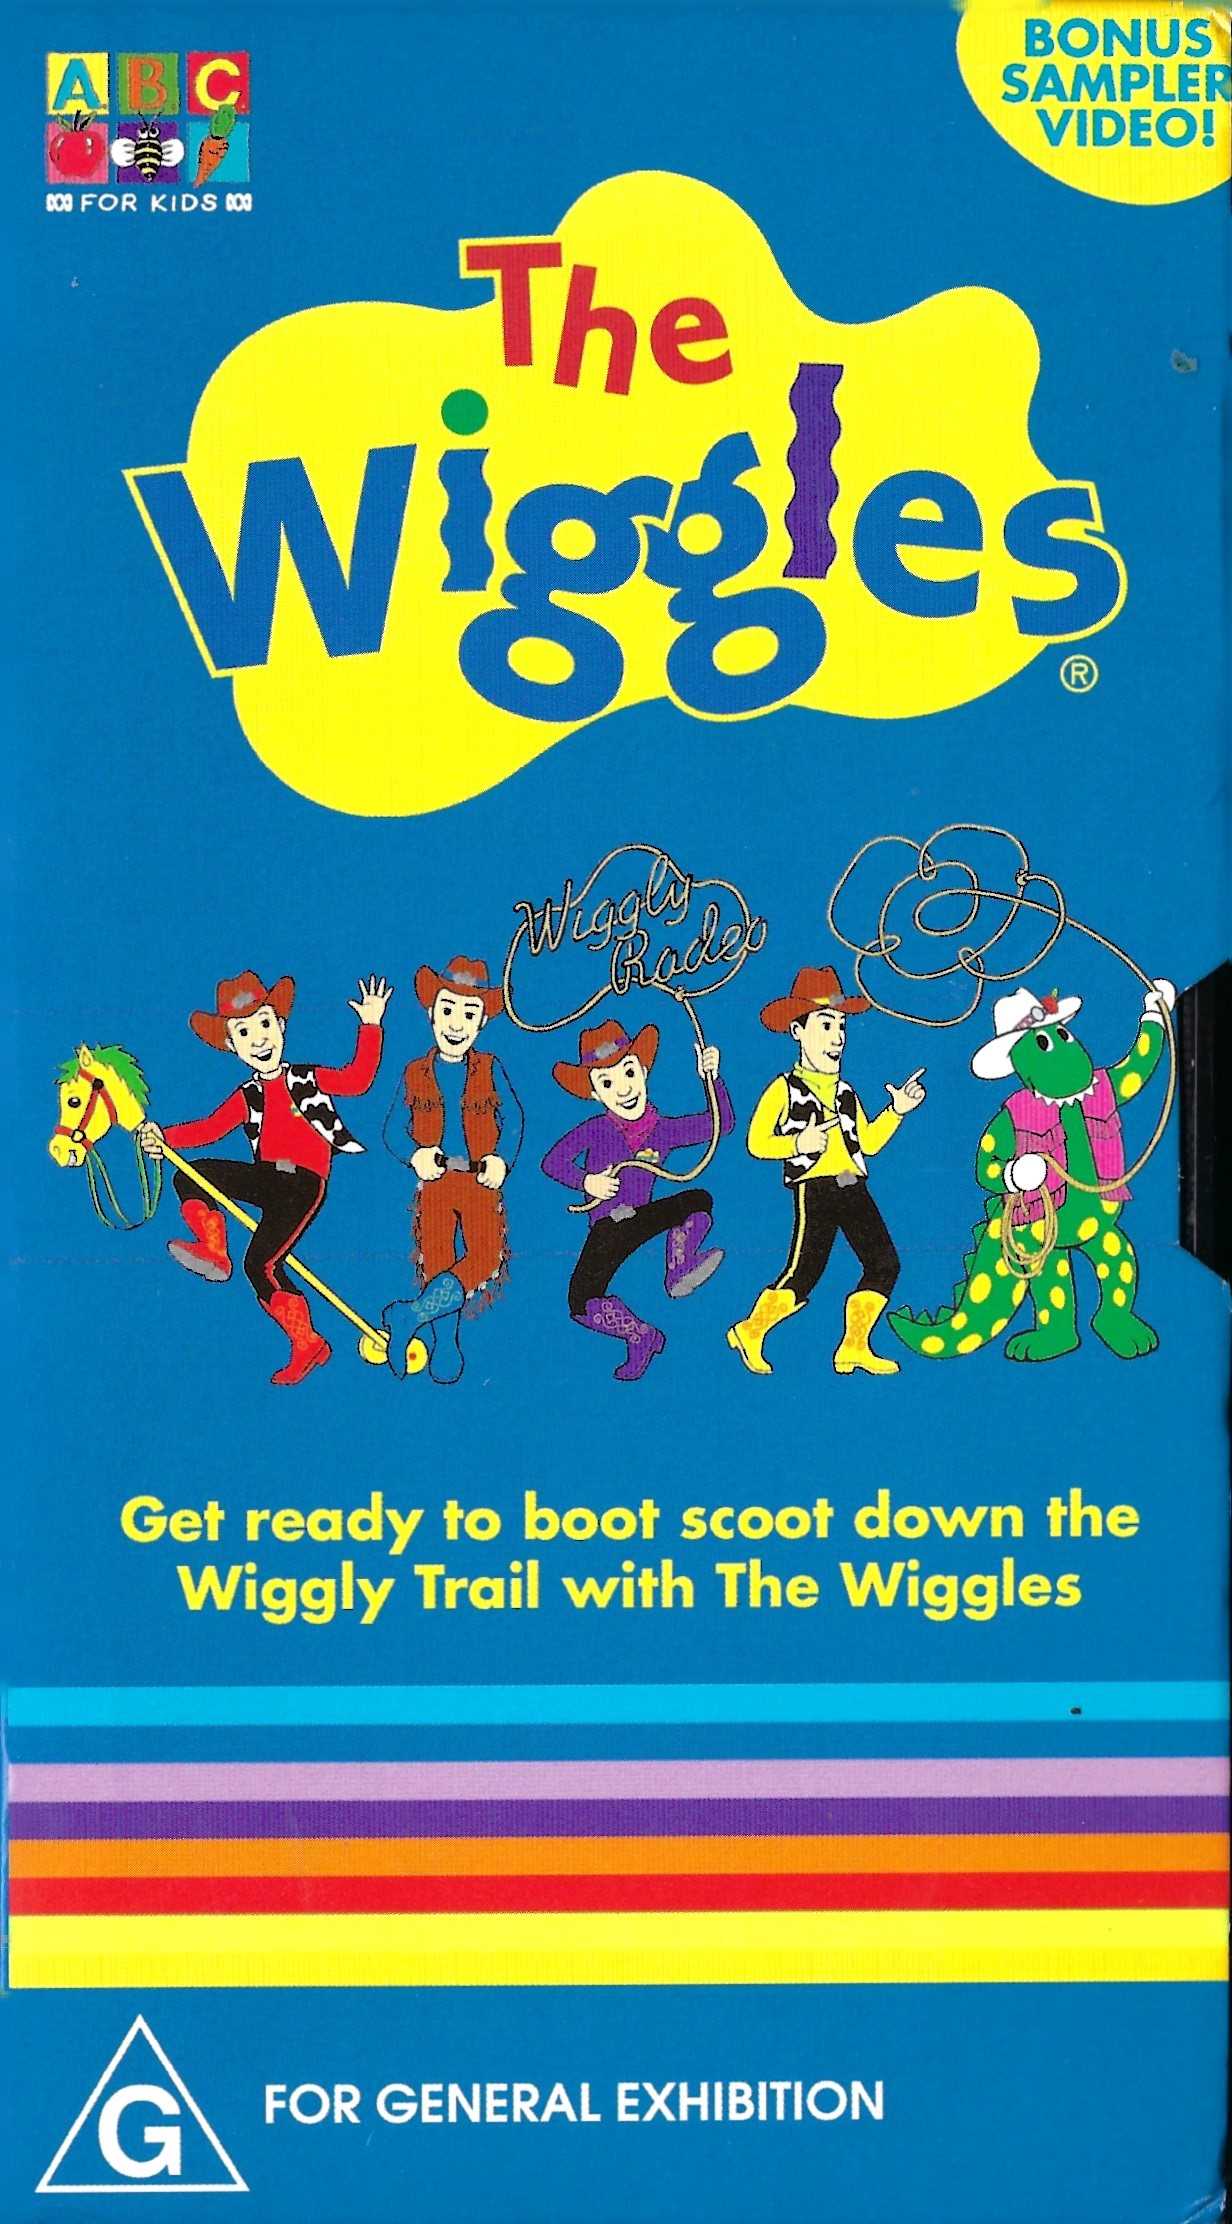 The Wiggles: Bonus Sampler Video